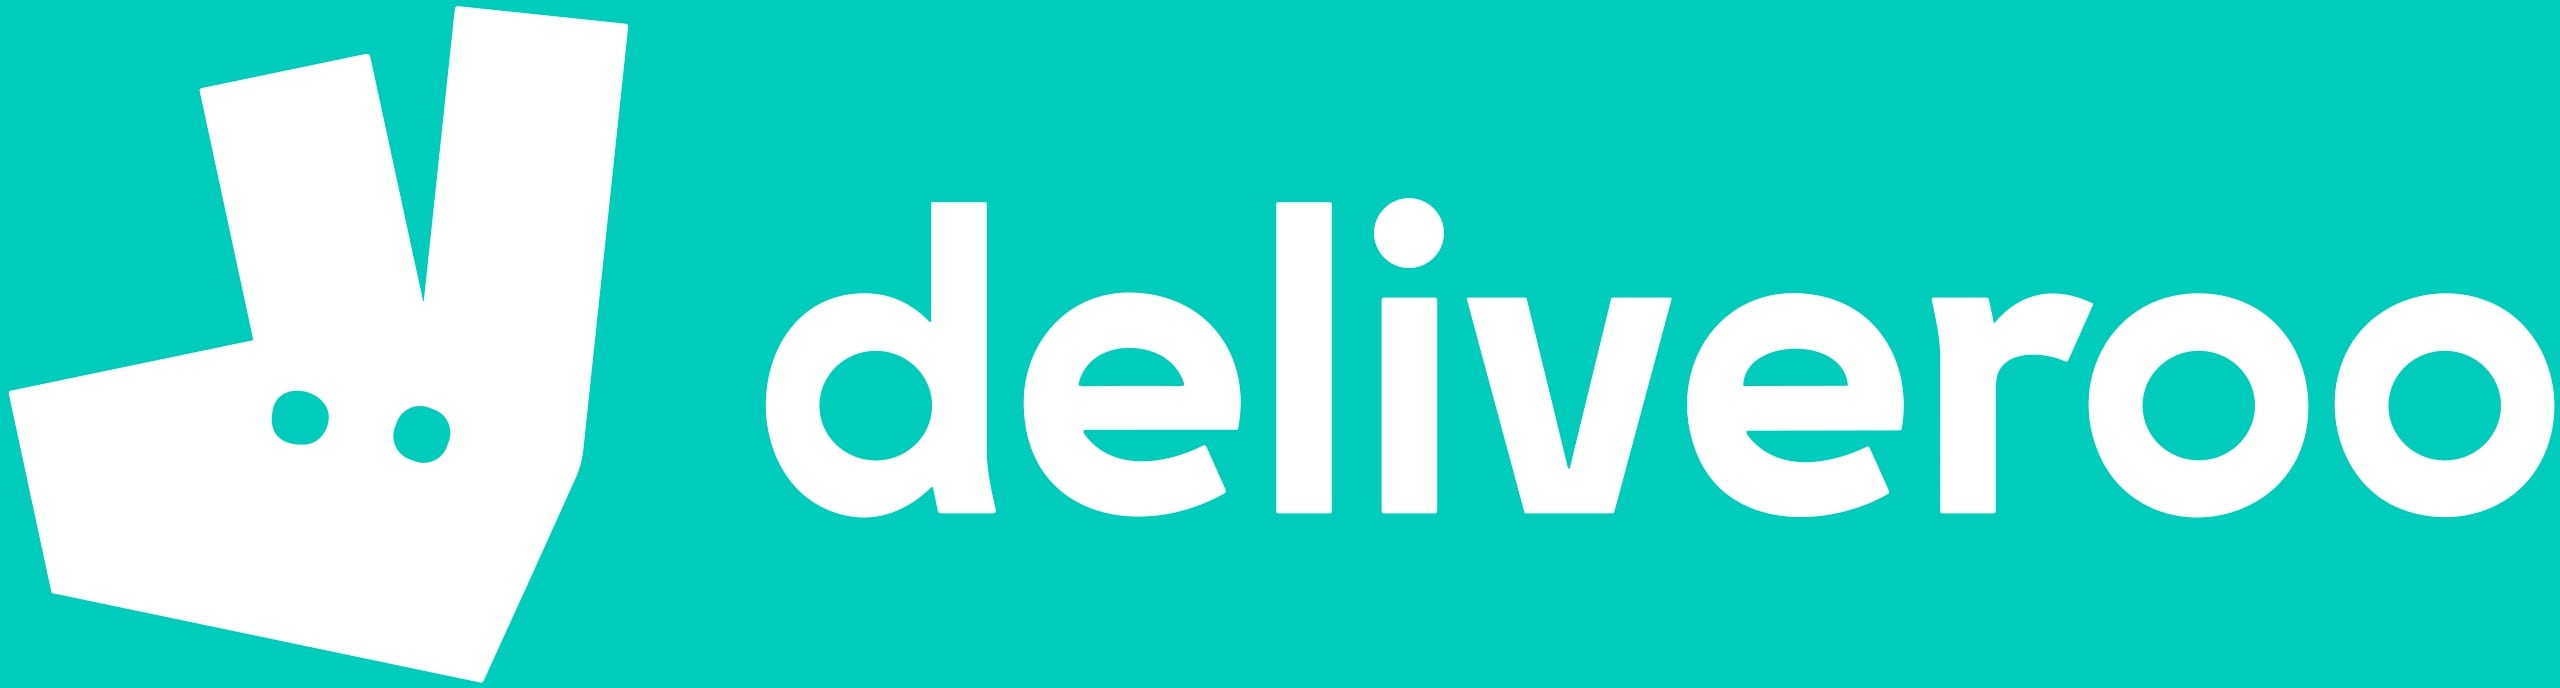 Deliveroo_Logo